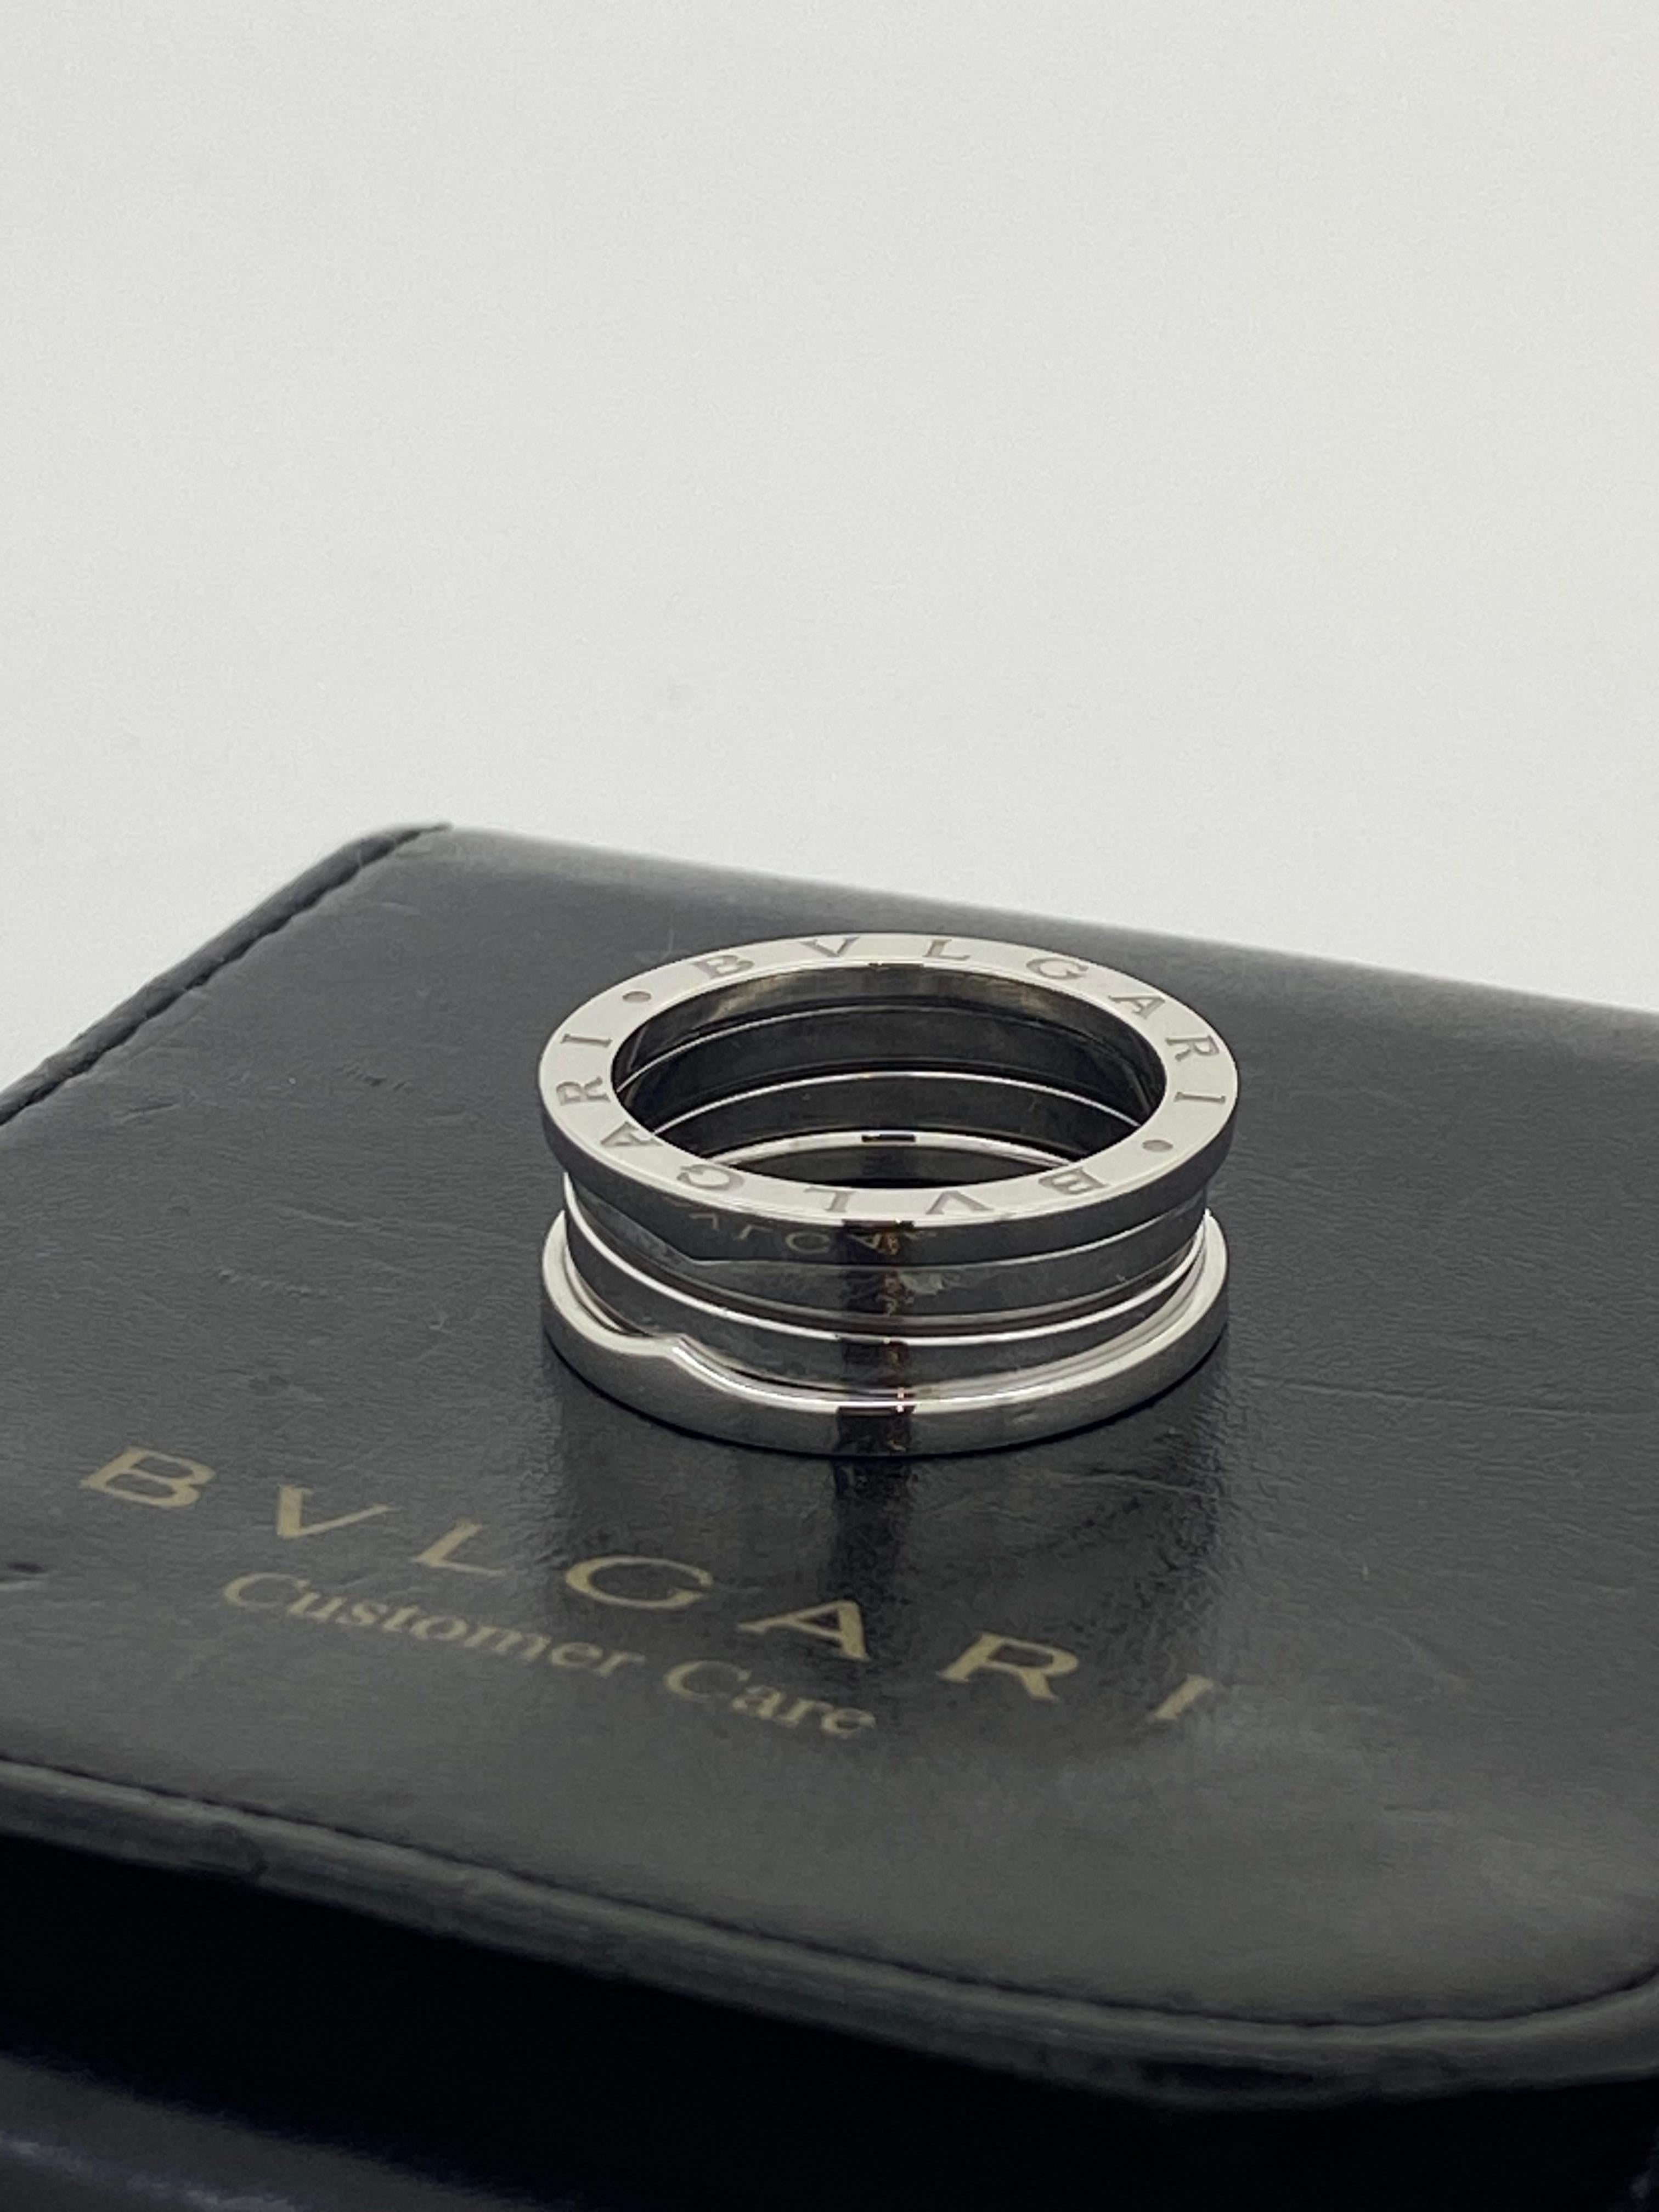 Issue de la collection iconique et immédiatement reconnaissable BVLGARI B-Zero 1, 
Cet anneau est finement travaillé en or blanc 18 carats.

En excellent état, 
la pièce porte le poinçon Bulgari, signé et estampillé à l'intérieur, 
Fabriqué en